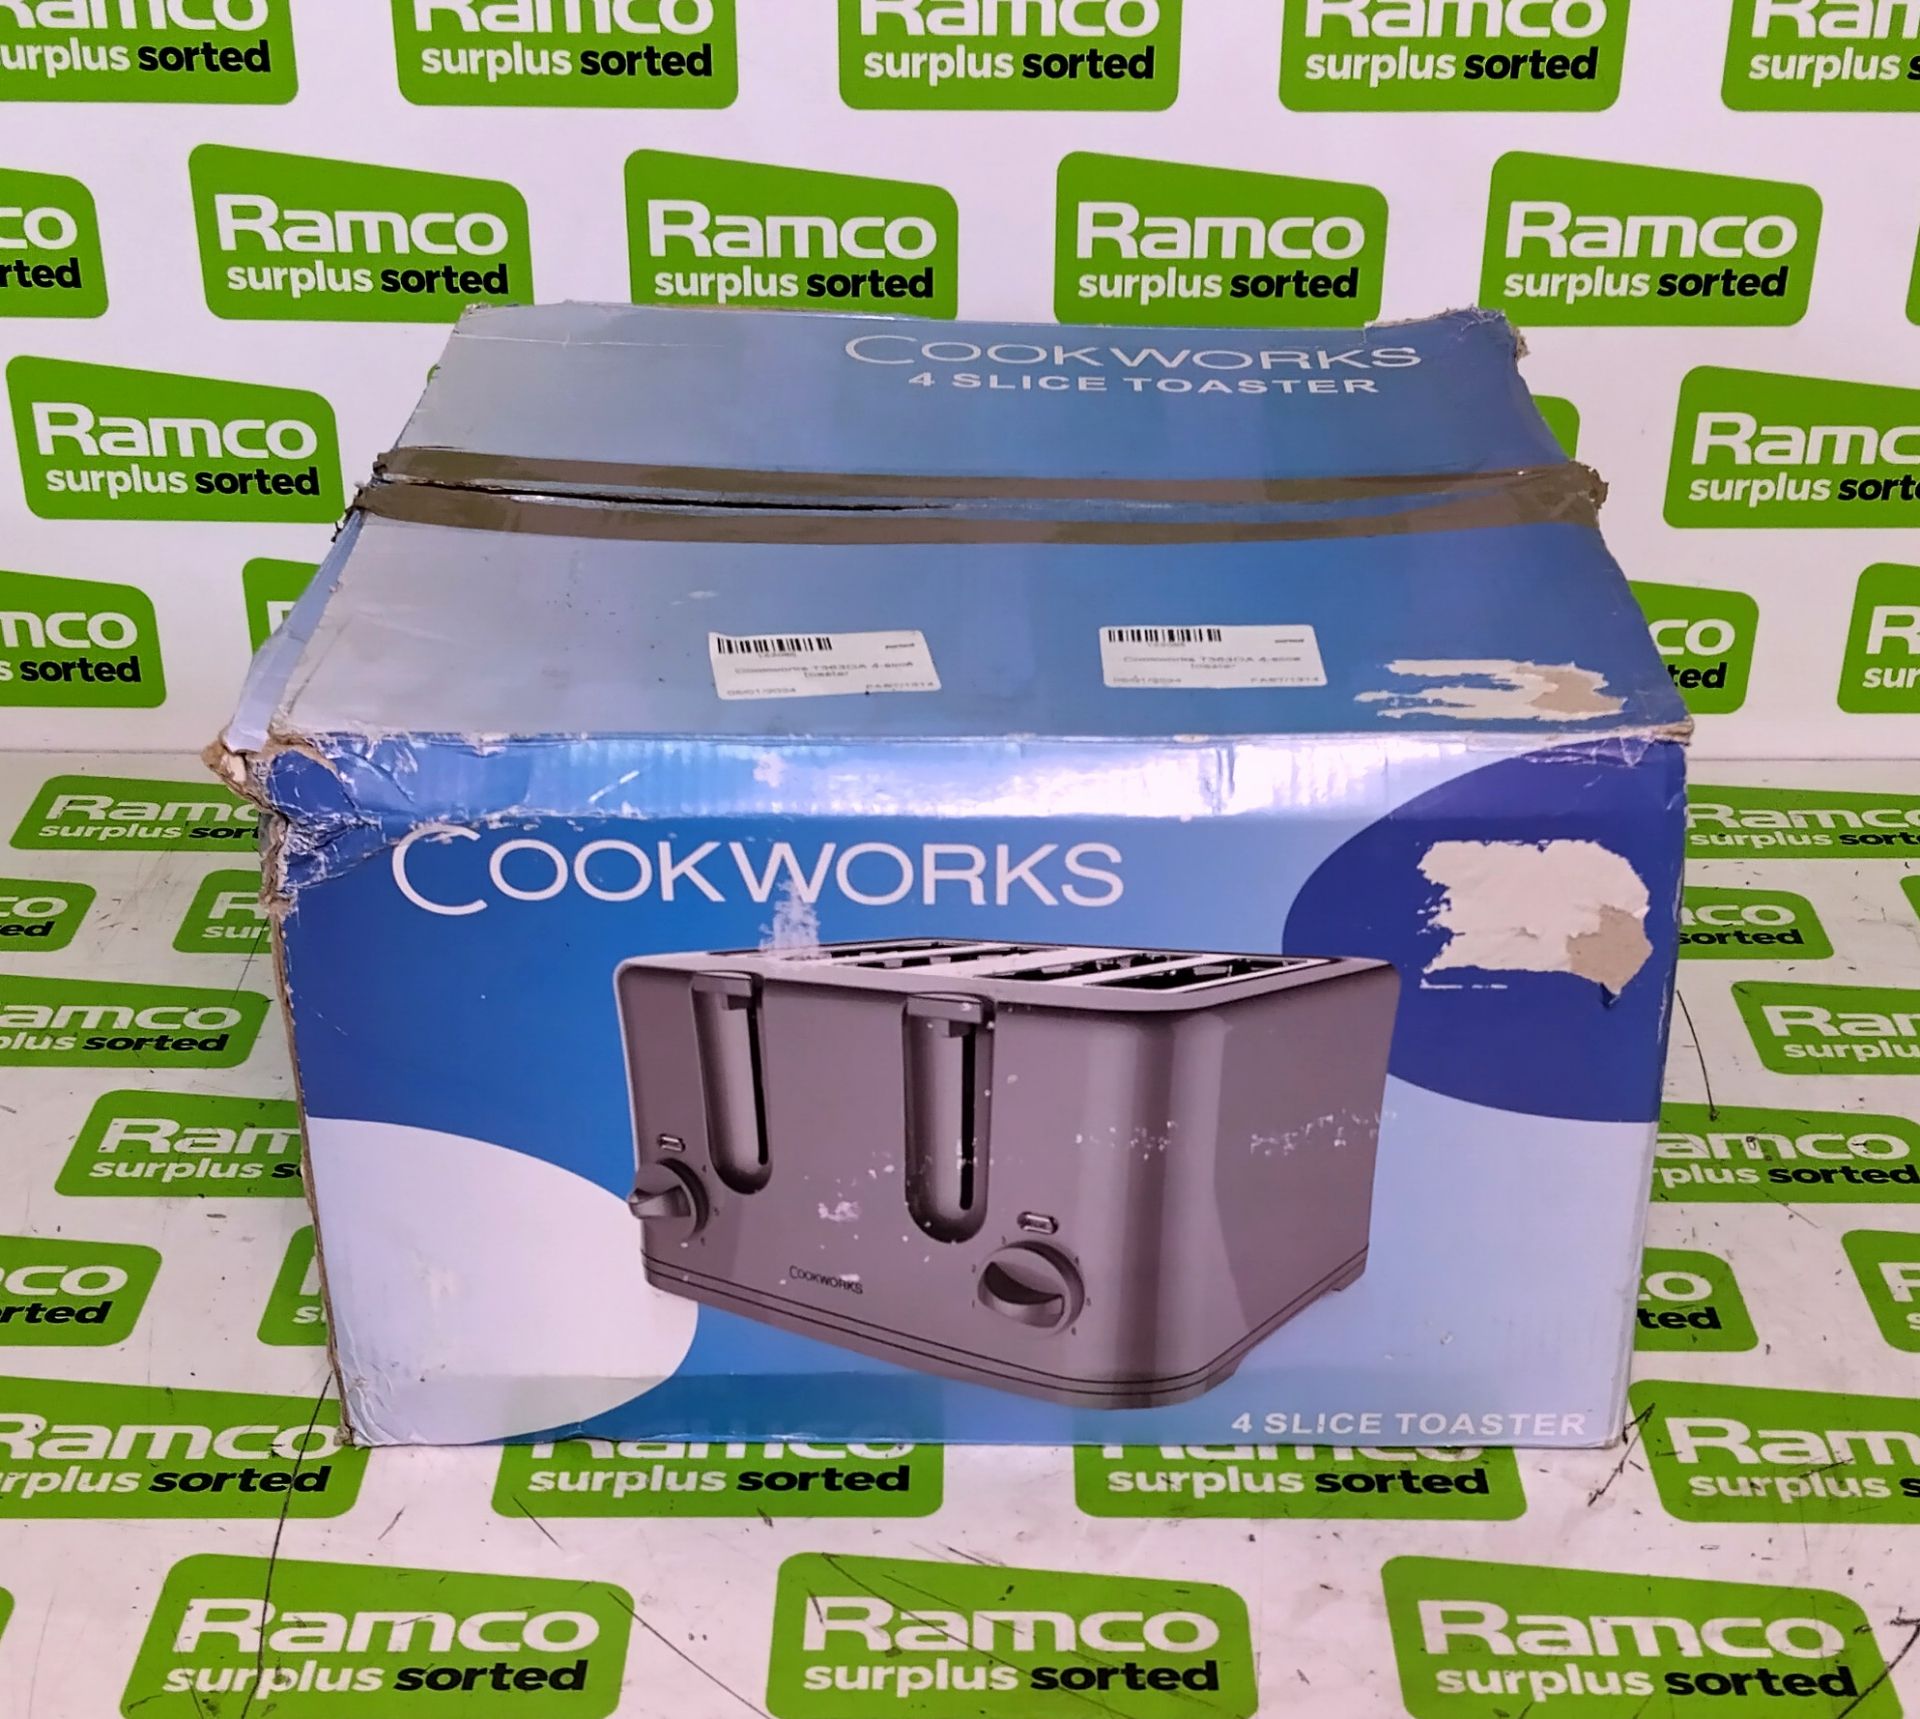 Cookworks T363DA 4-slice toaster